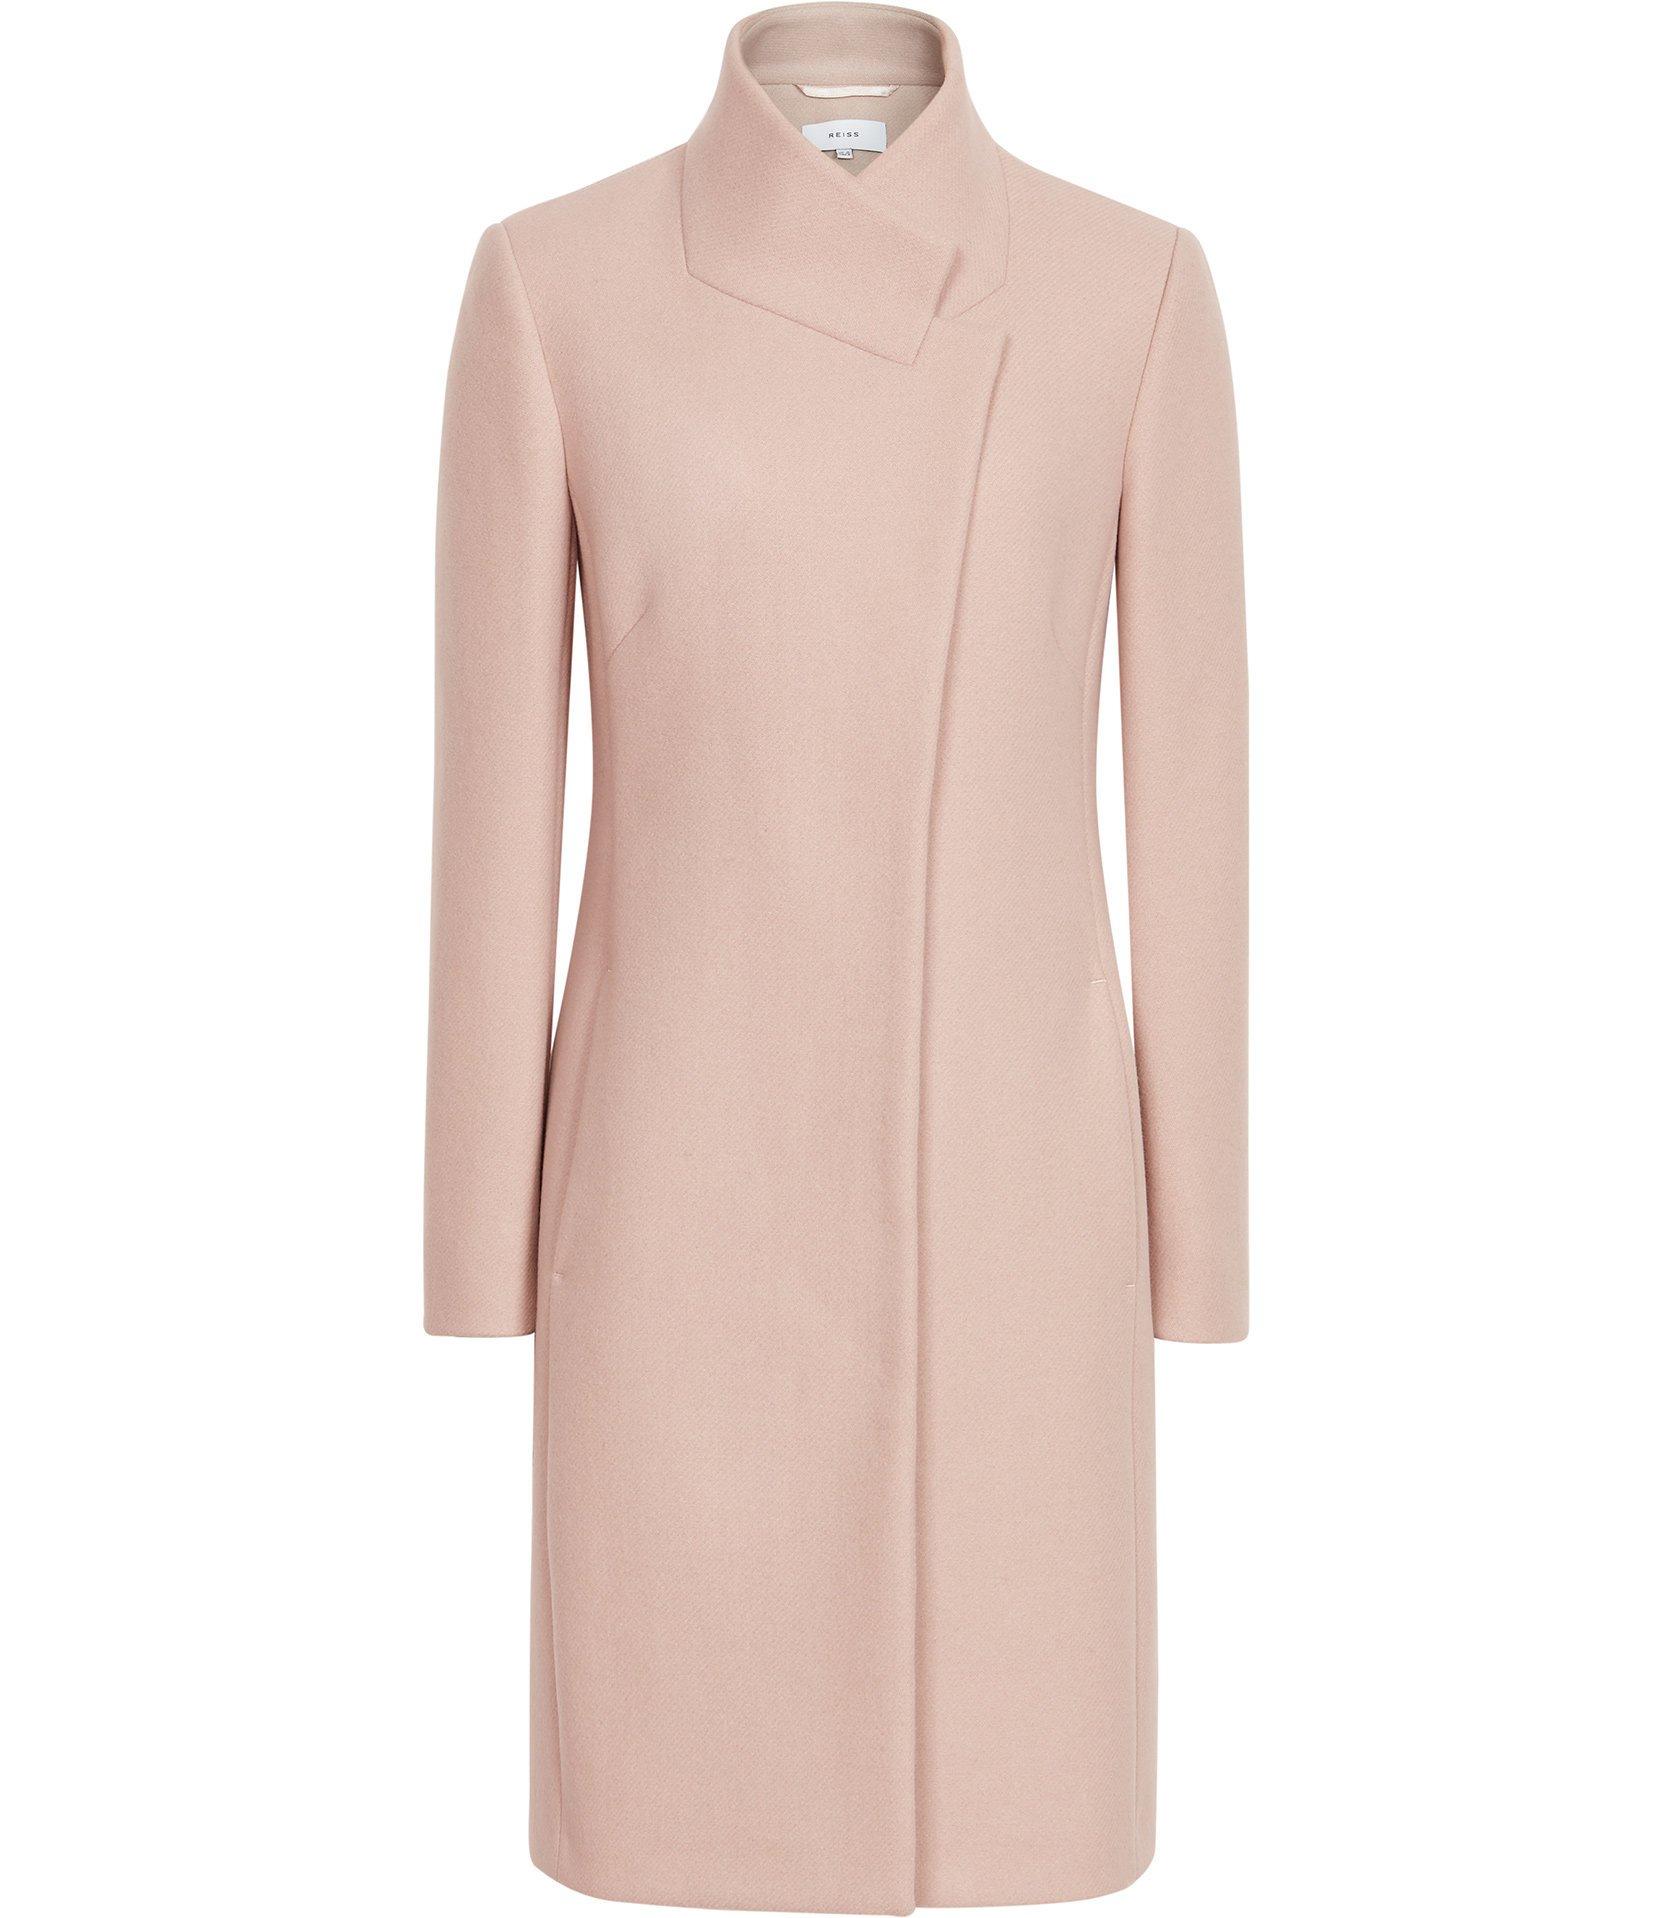 Reiss Mabel Longline Coat in Soft Pink.jpg